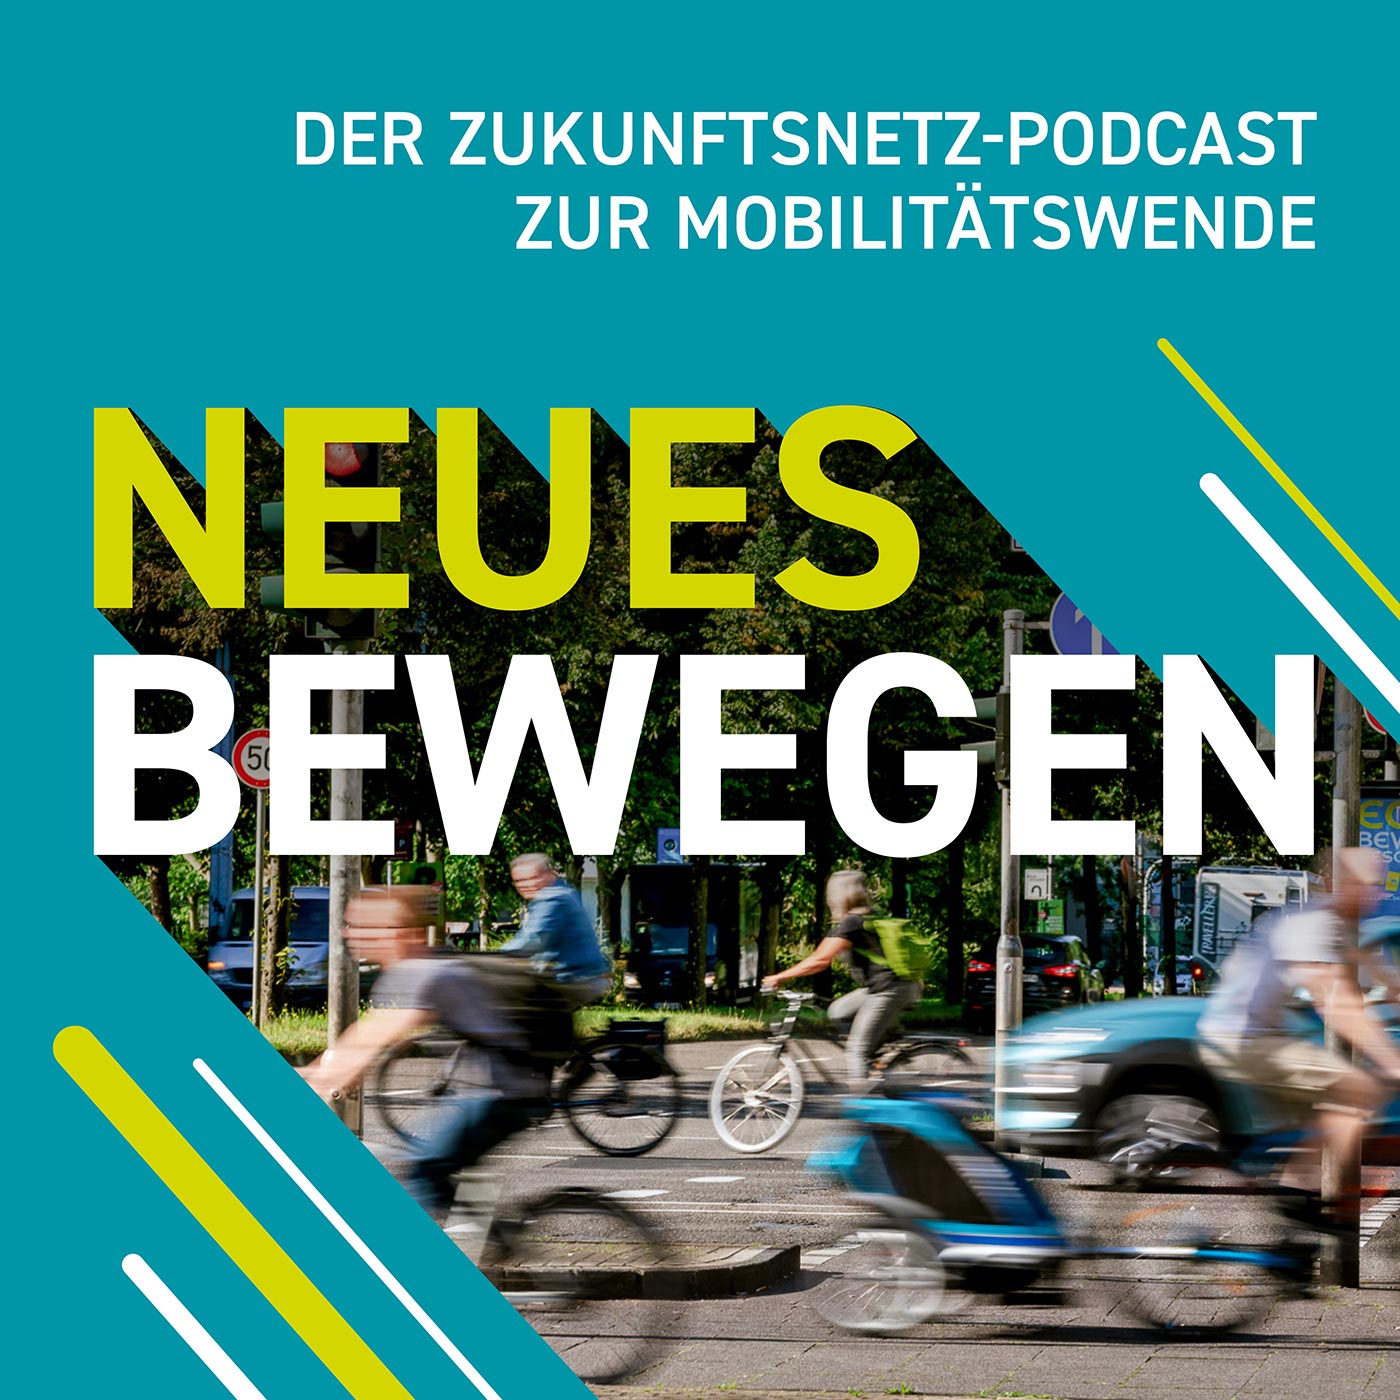 NEUES BEWEGEN – Der Zukunftsnetz-Podcast zur Mobilitätswende